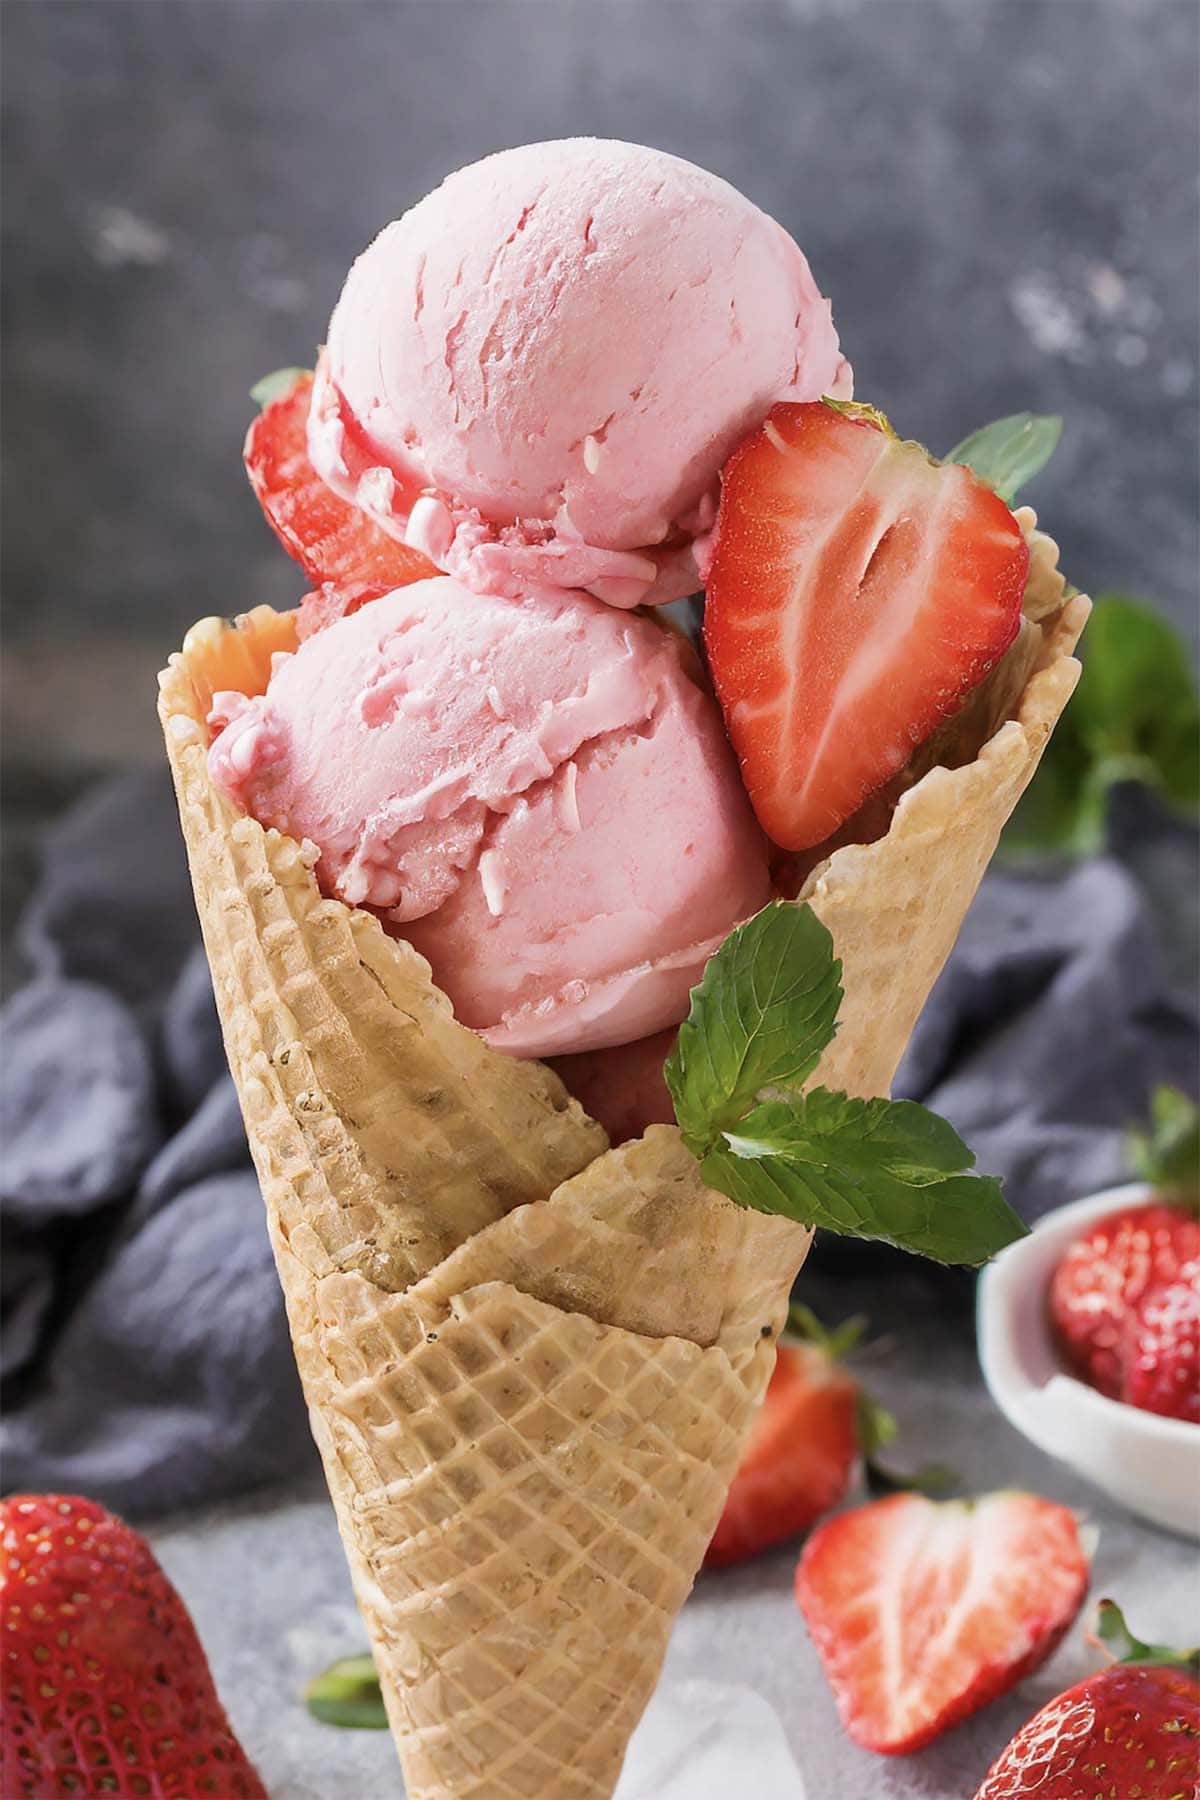 homemade strawberry ice cream in a cone.